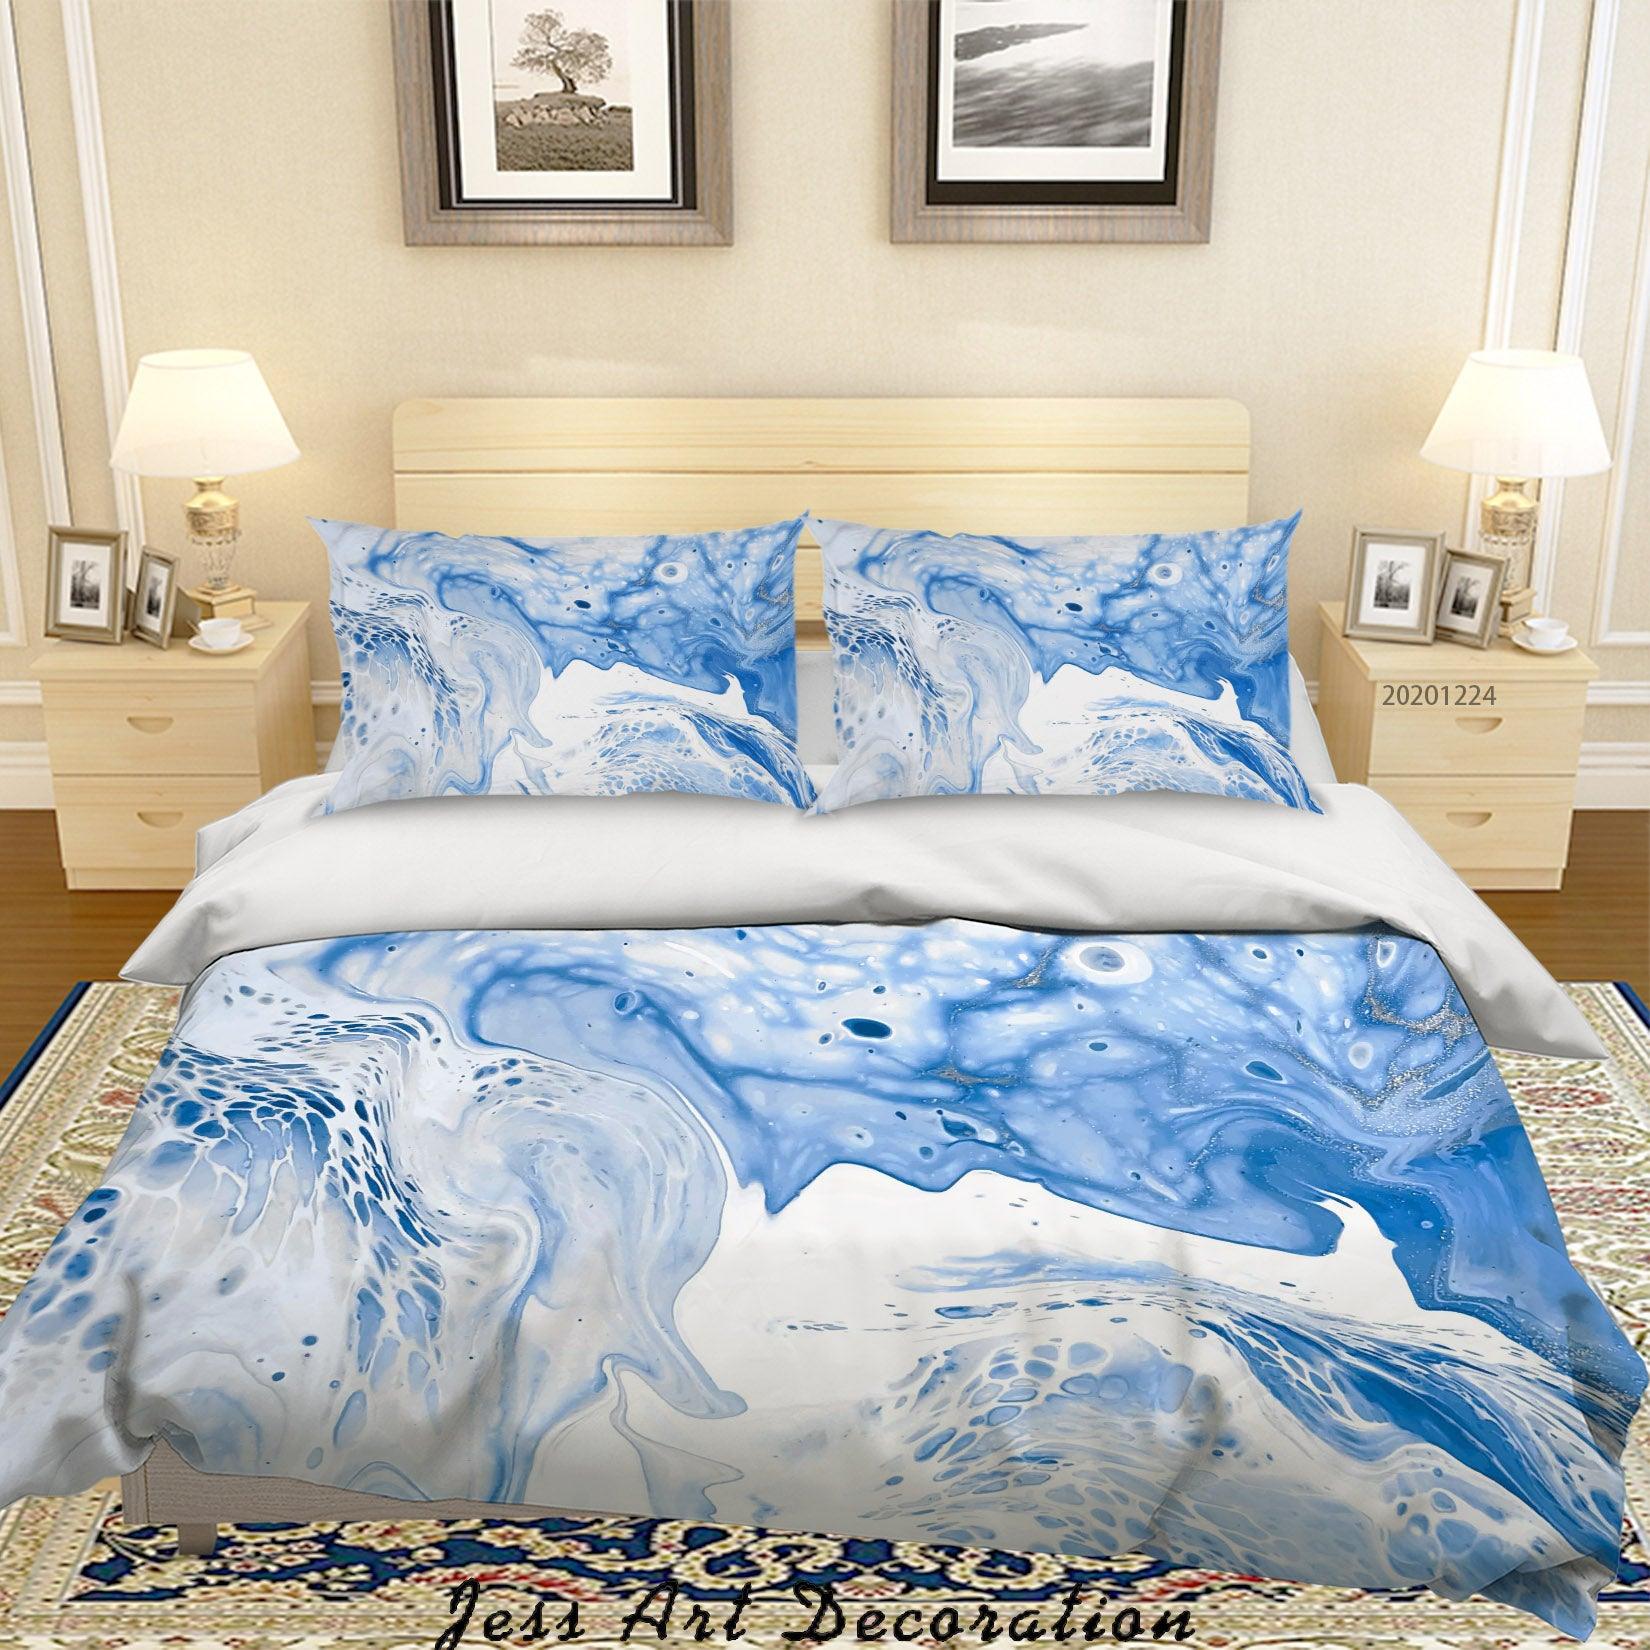 3D Watercolor Blue Marble Quilt Cover Set Bedding Set Duvet Cover Pillowcases 163 LQH- Jess Art Decoration